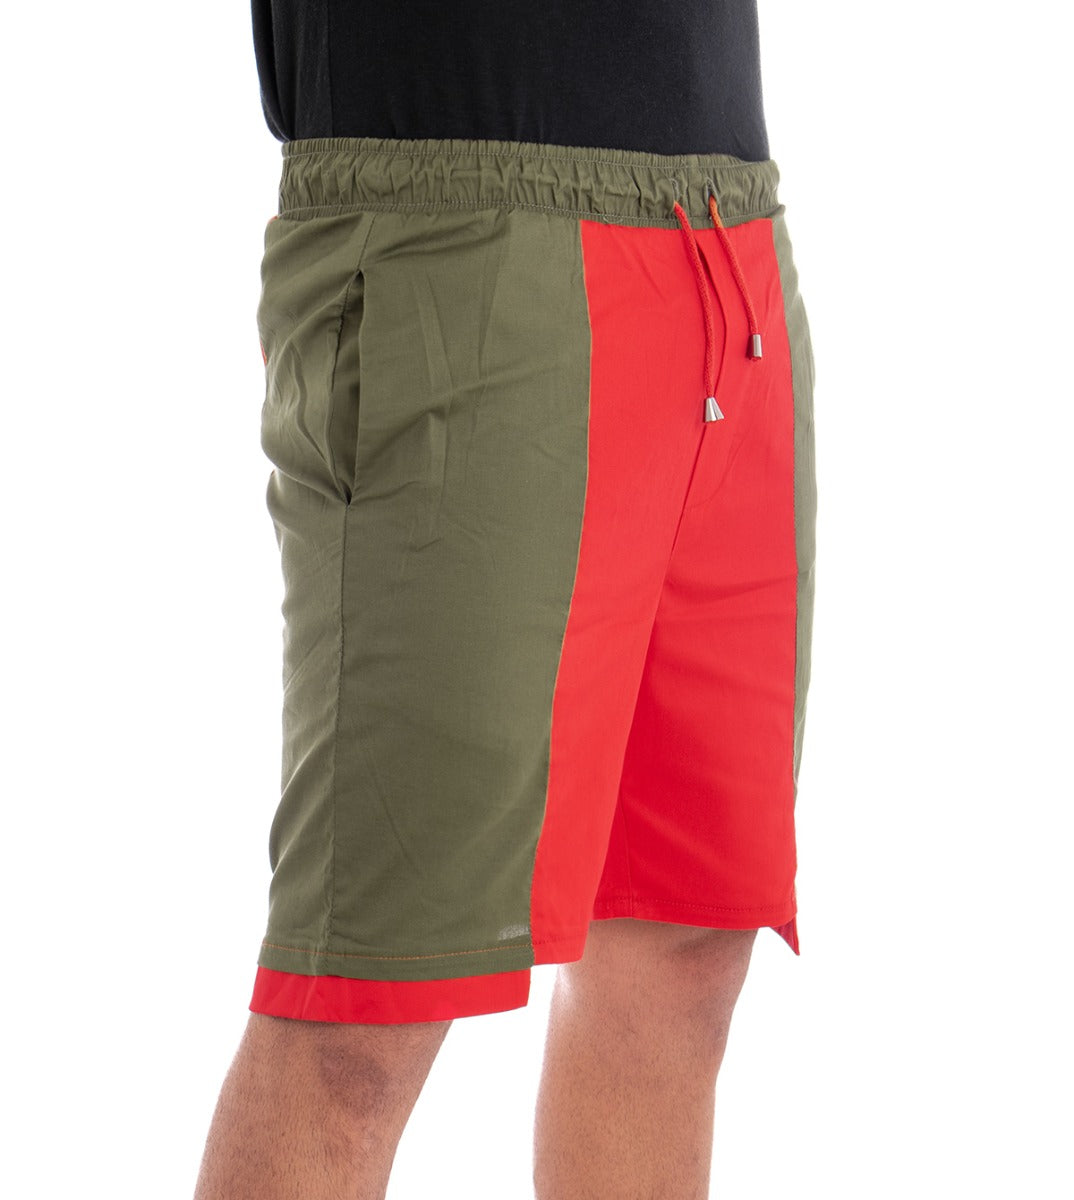 Bermuda Pantaloncino Uomo Corto Elastico Bicolore GIOSAL-PC1279A